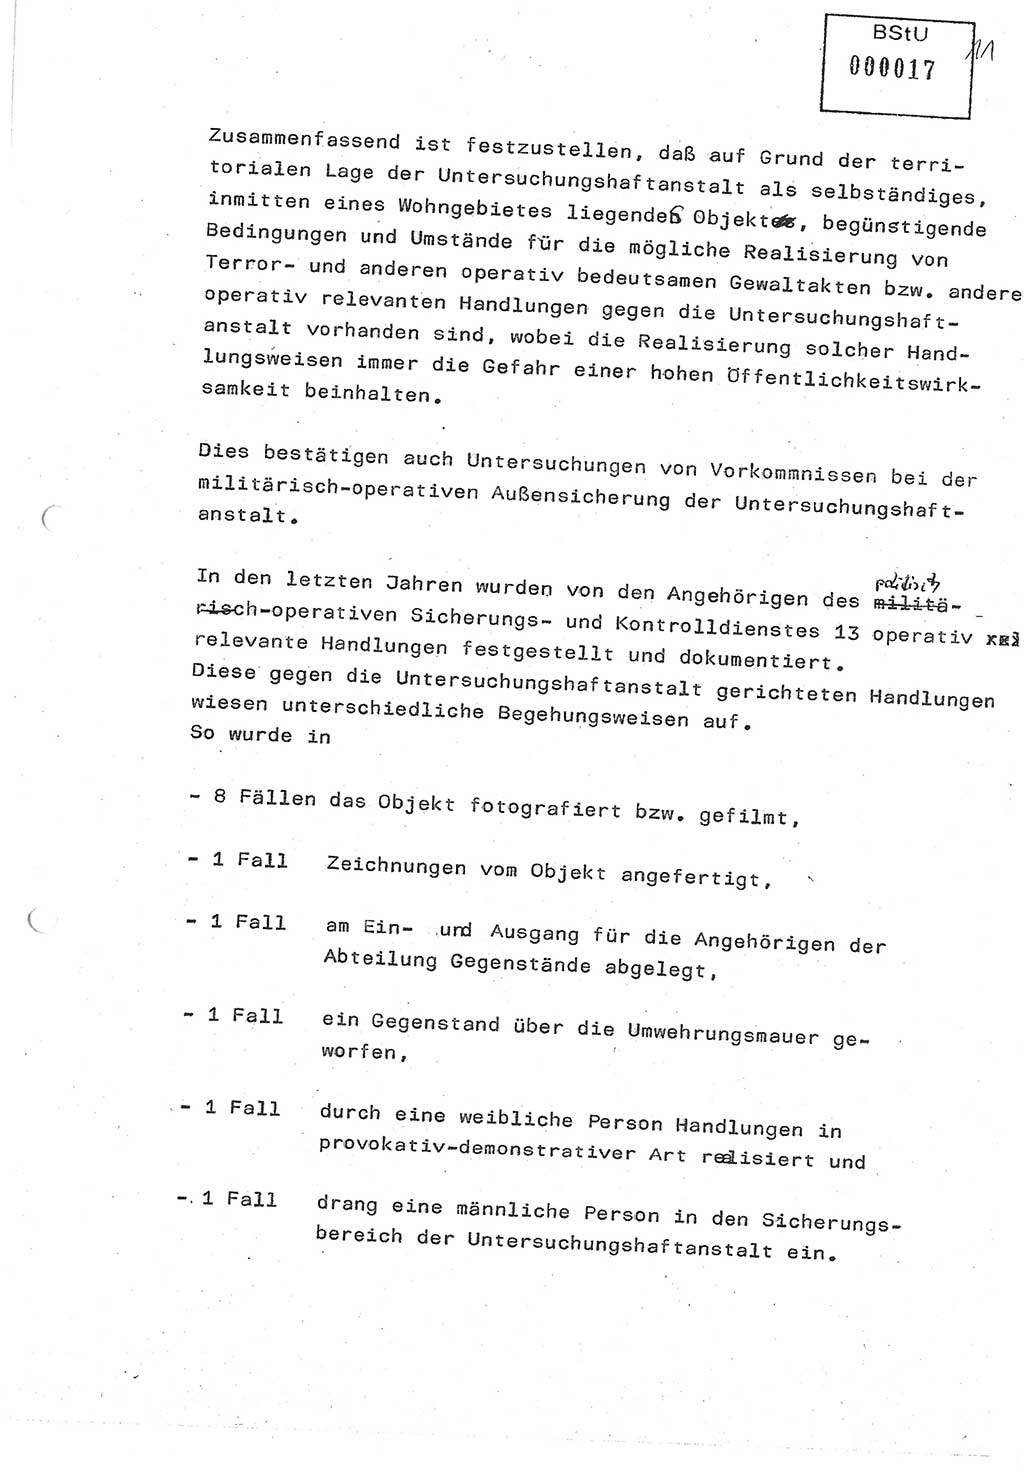 Diplomarbeit (Entwurf) Oberleutnant Peter Parke (Abt. ⅩⅣ), Ministerium für Staatssicherheit (MfS) [Deutsche Demokratische Republik (DDR)], Juristische Hochschule (JHS), Geheime Verschlußsache (GVS) o001-98/86, Potsdam 1986, Seite 17 (Dipl.-Arb. MfS DDR JHS GVS o001-98/86 1986, S. 17)